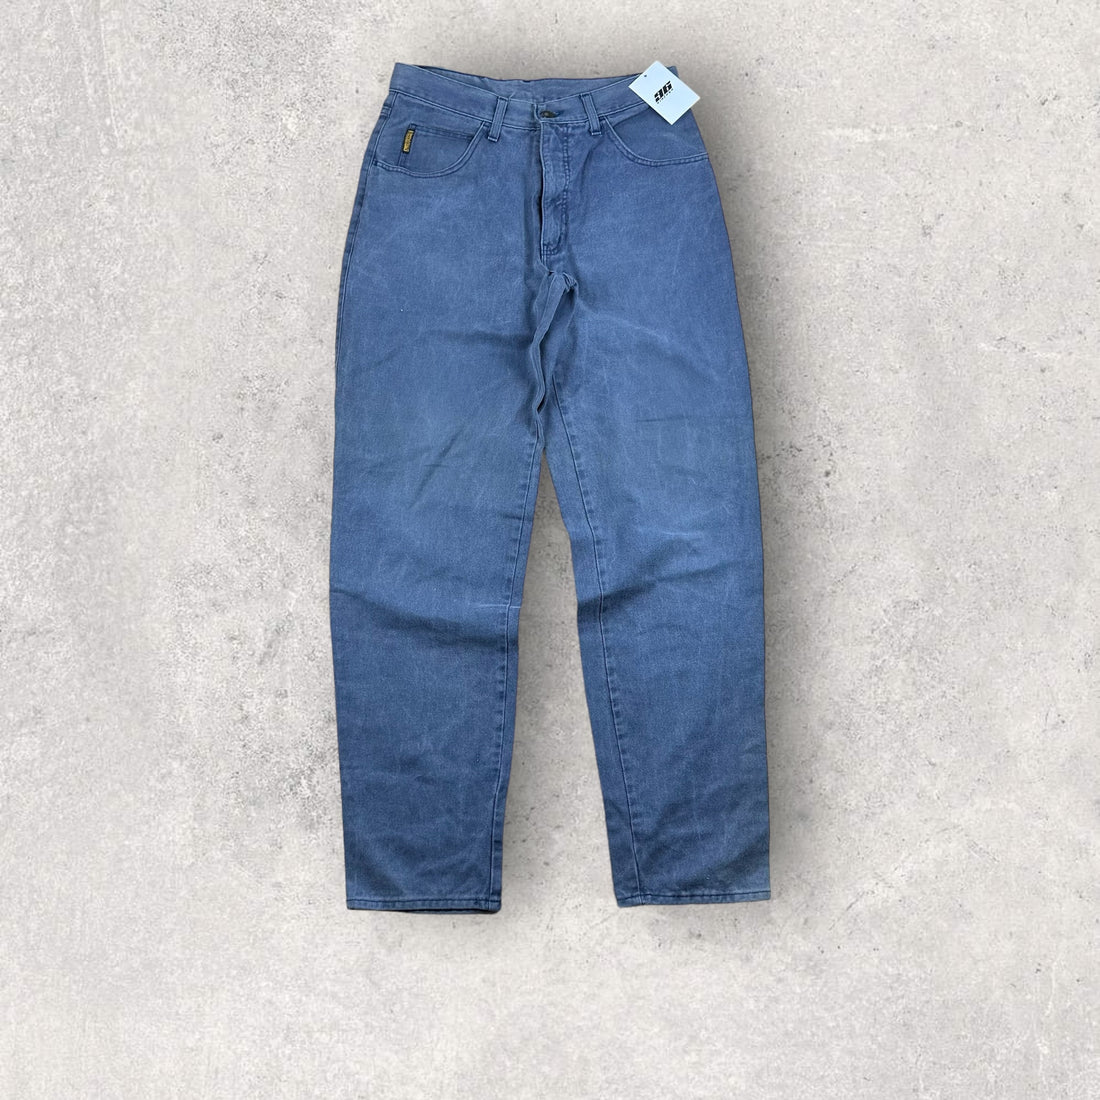 Vintage Armani Jeans (34)